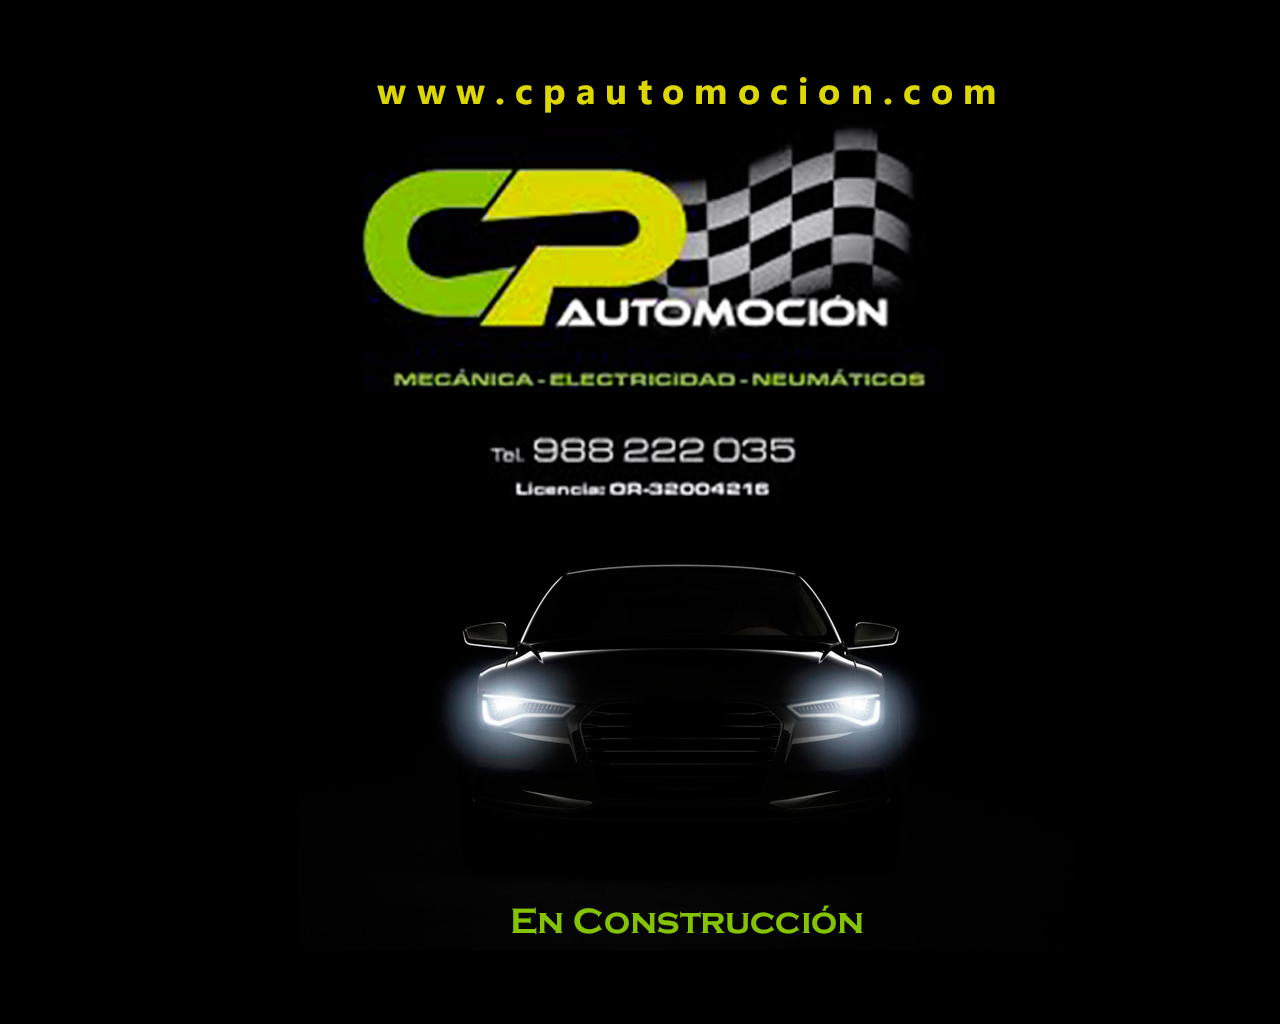 www.cpautomocion.com  tu taller mecánico en Ourense  